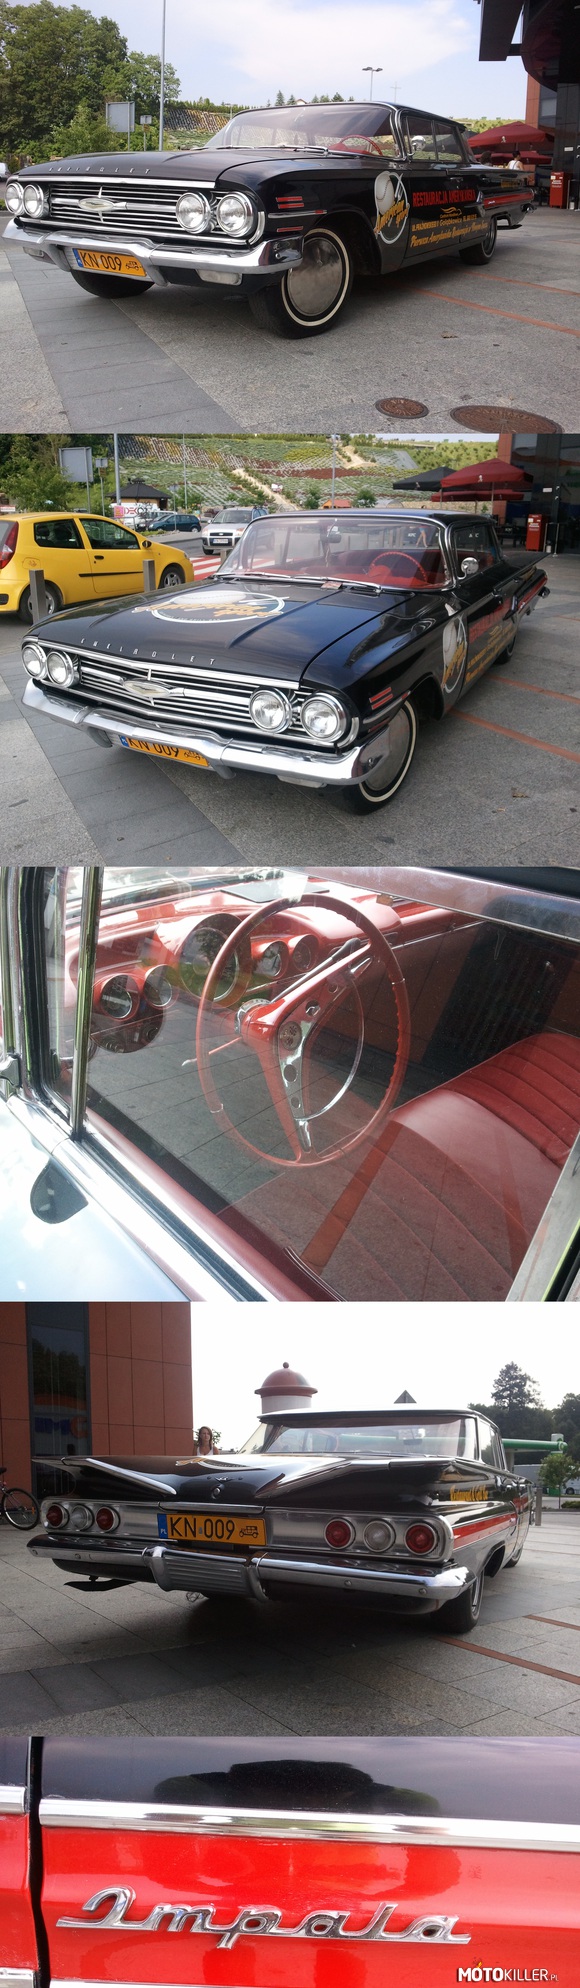 Nowosądeckie Perełki – Nowy Sącz też ma swoje Perełki! Chevrolet Impala, niby z reklamą, ale jednak zabytek! 